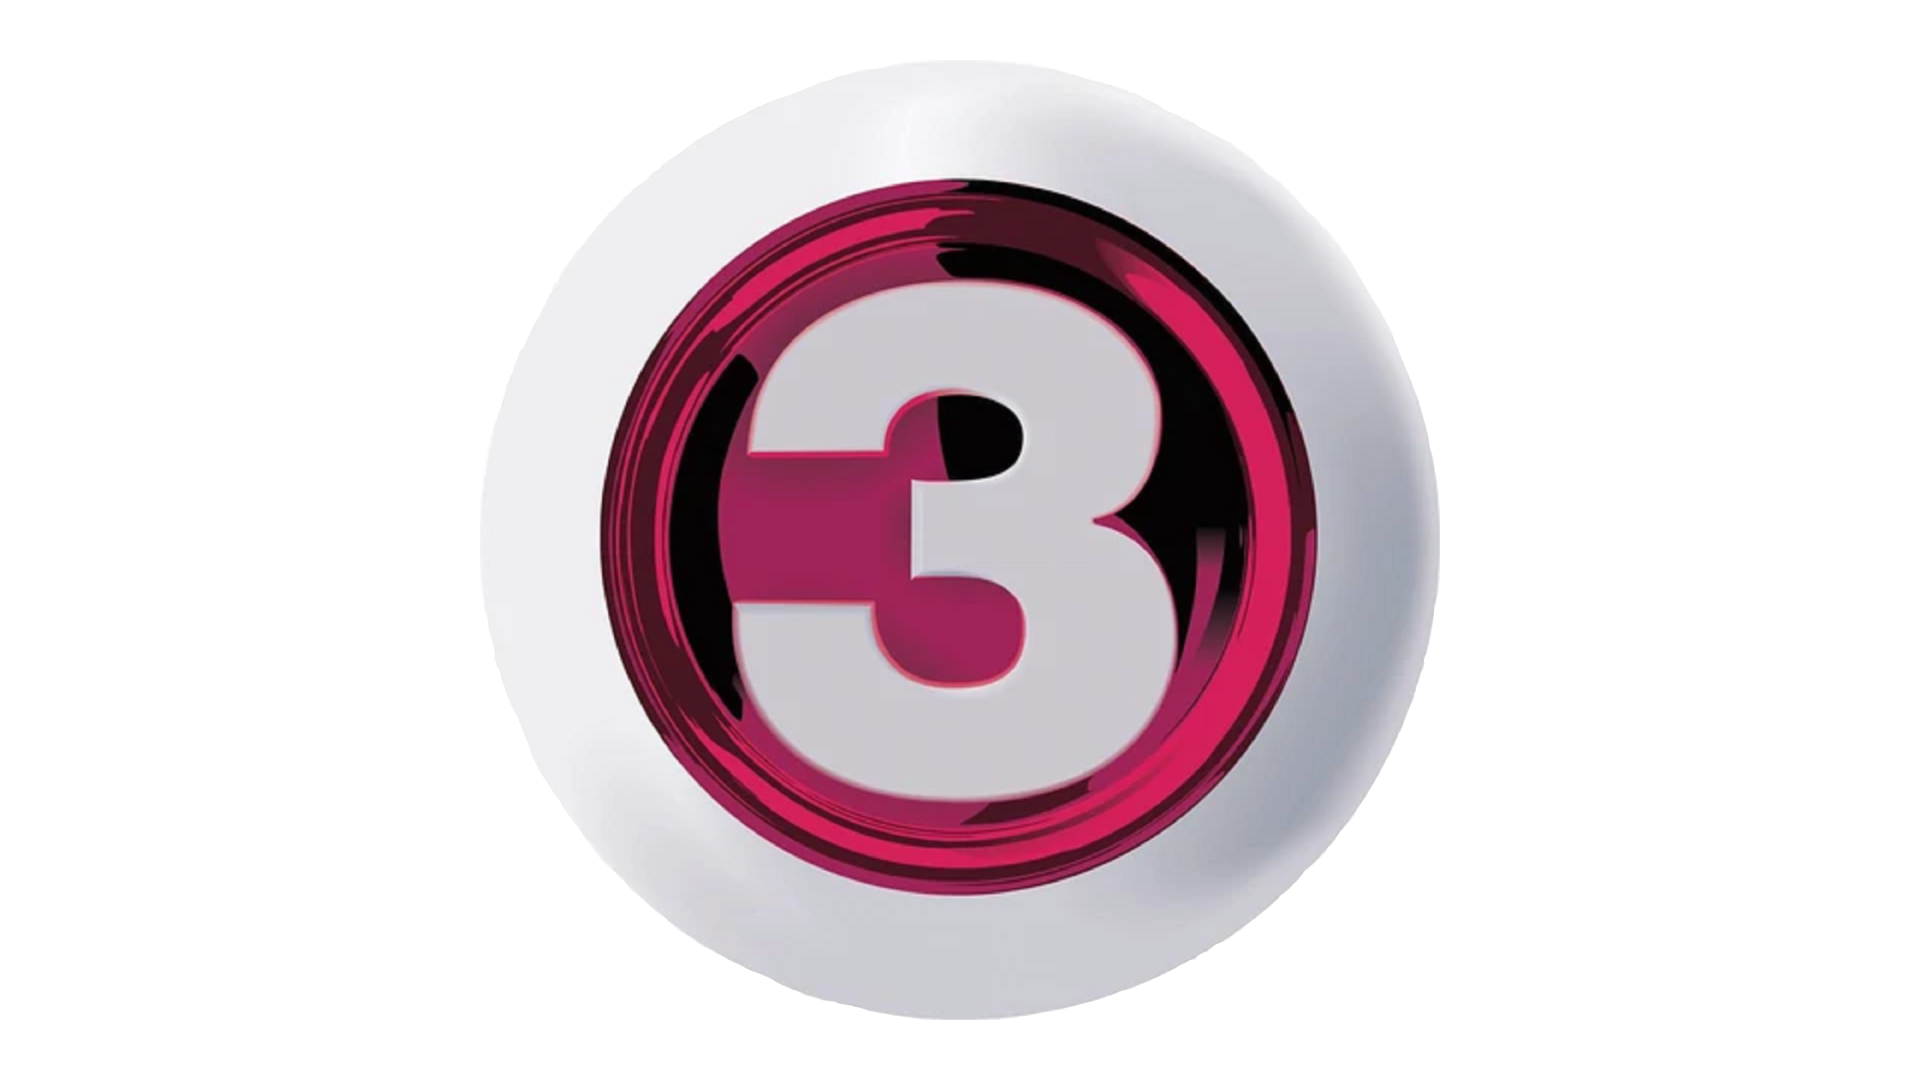 Tv3 Viasat. Viasat-3. Viasat логотип ТВ. Телеканалы Дании. Tv3 3